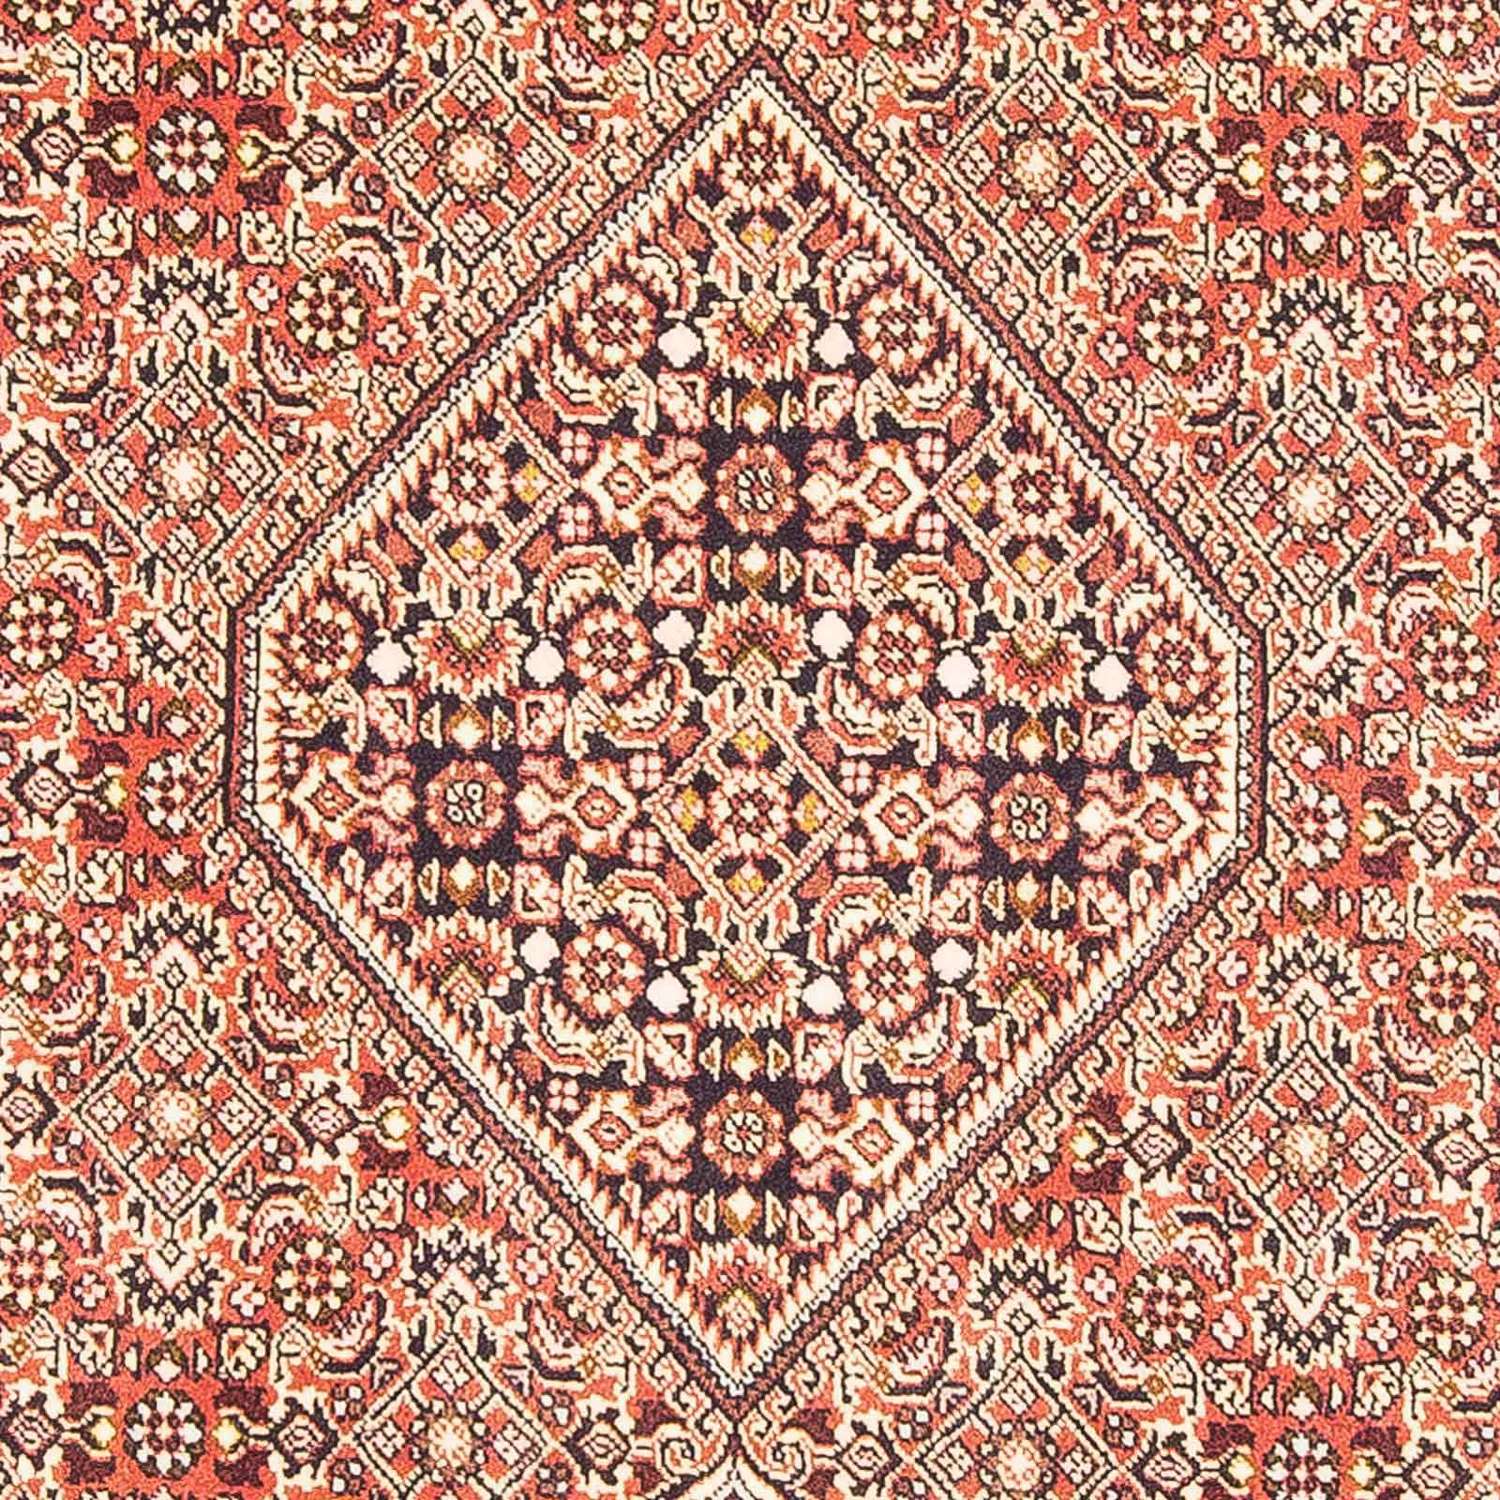 Persisk matta - Bijar - 176 x 110 cm - ljusröd